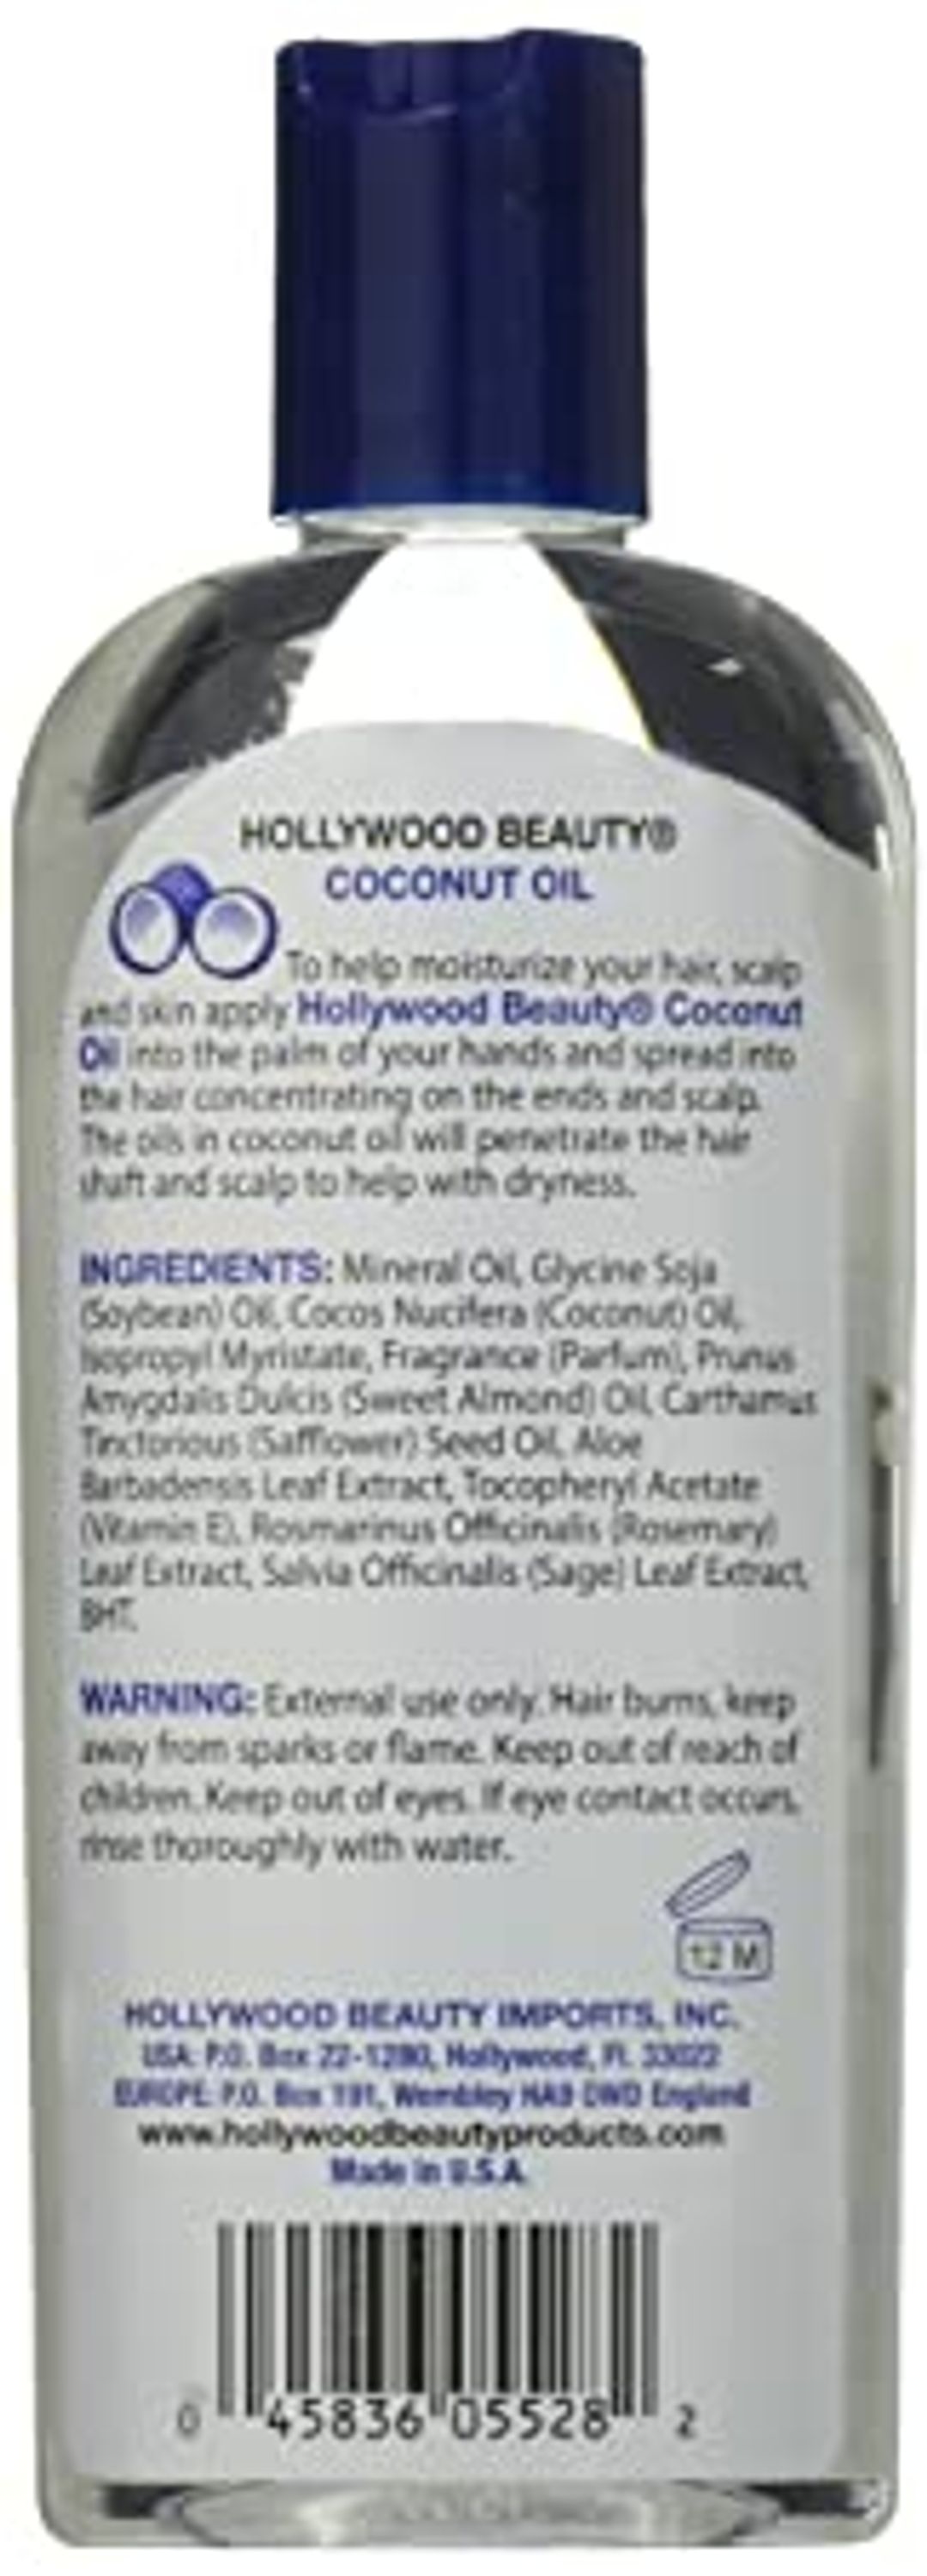 Hollywood Beauty Coconut Oil - 8oz